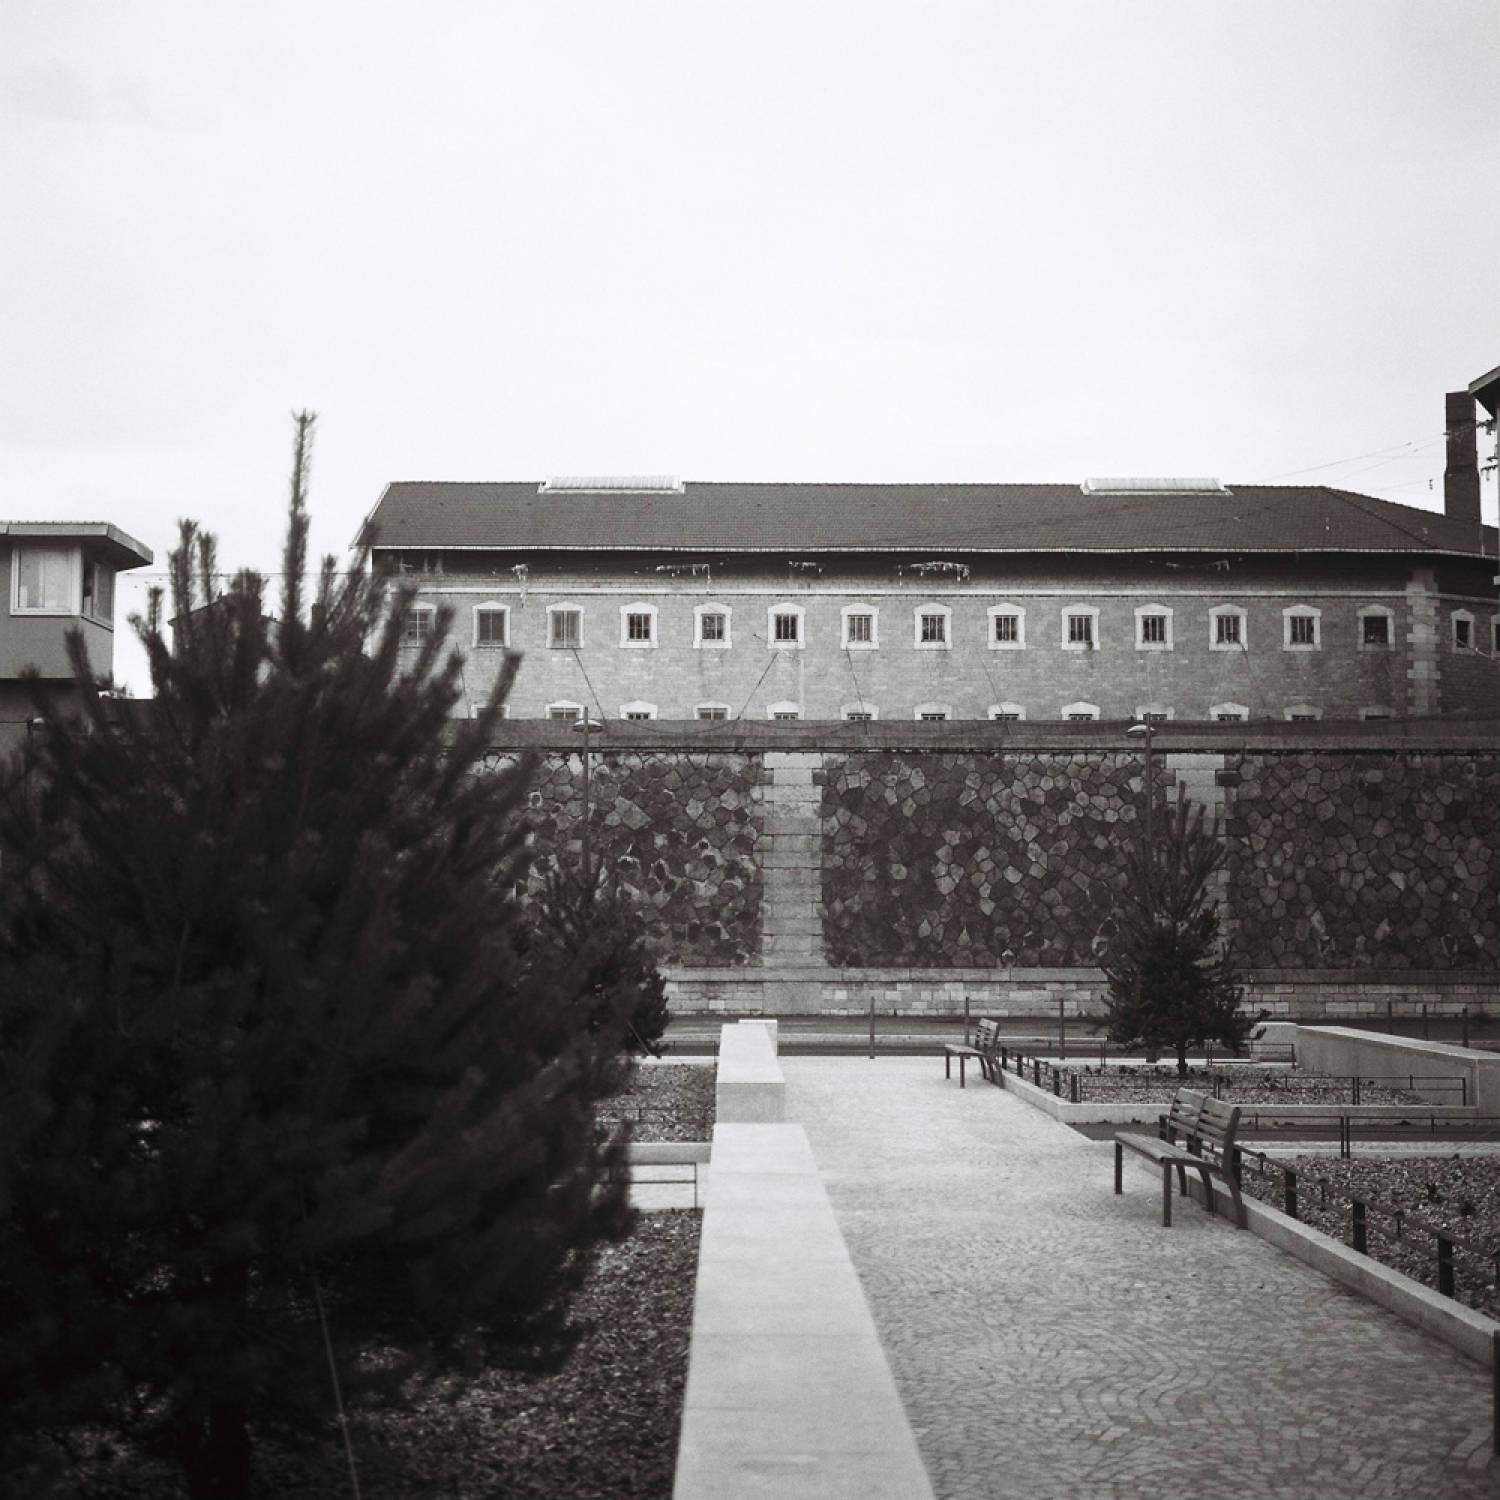 La prison vue des jardins extérieurs